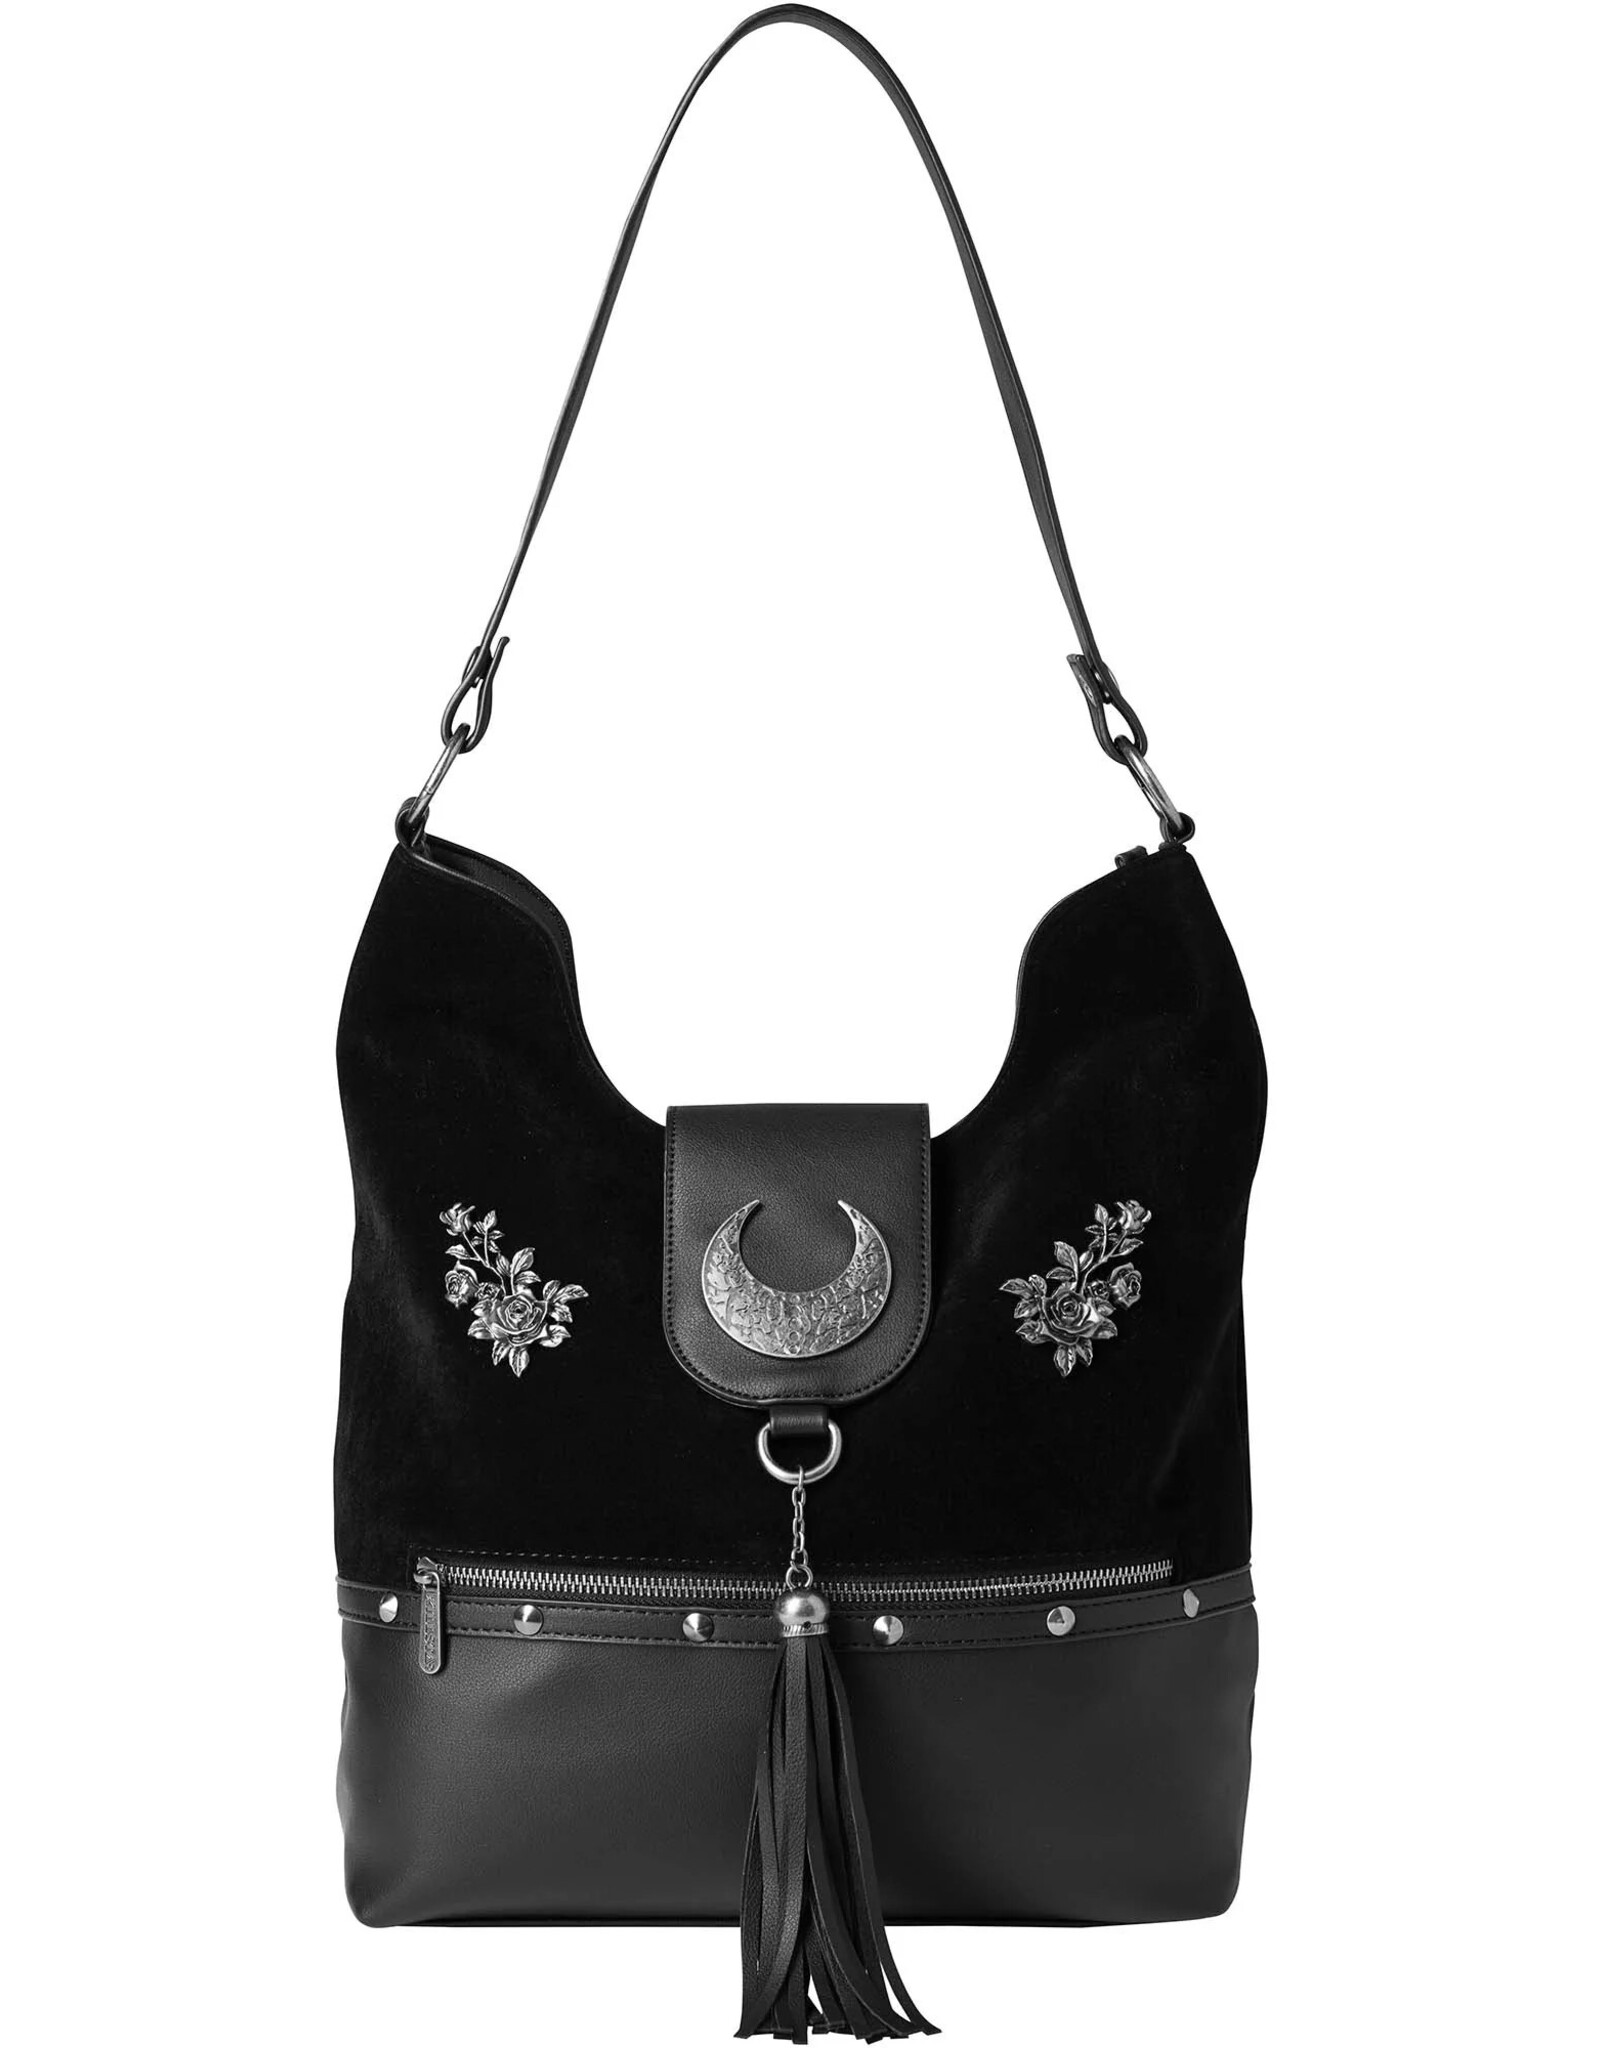 Killstar Killstar bags and accessories - Killstar Astral Aura Handbag